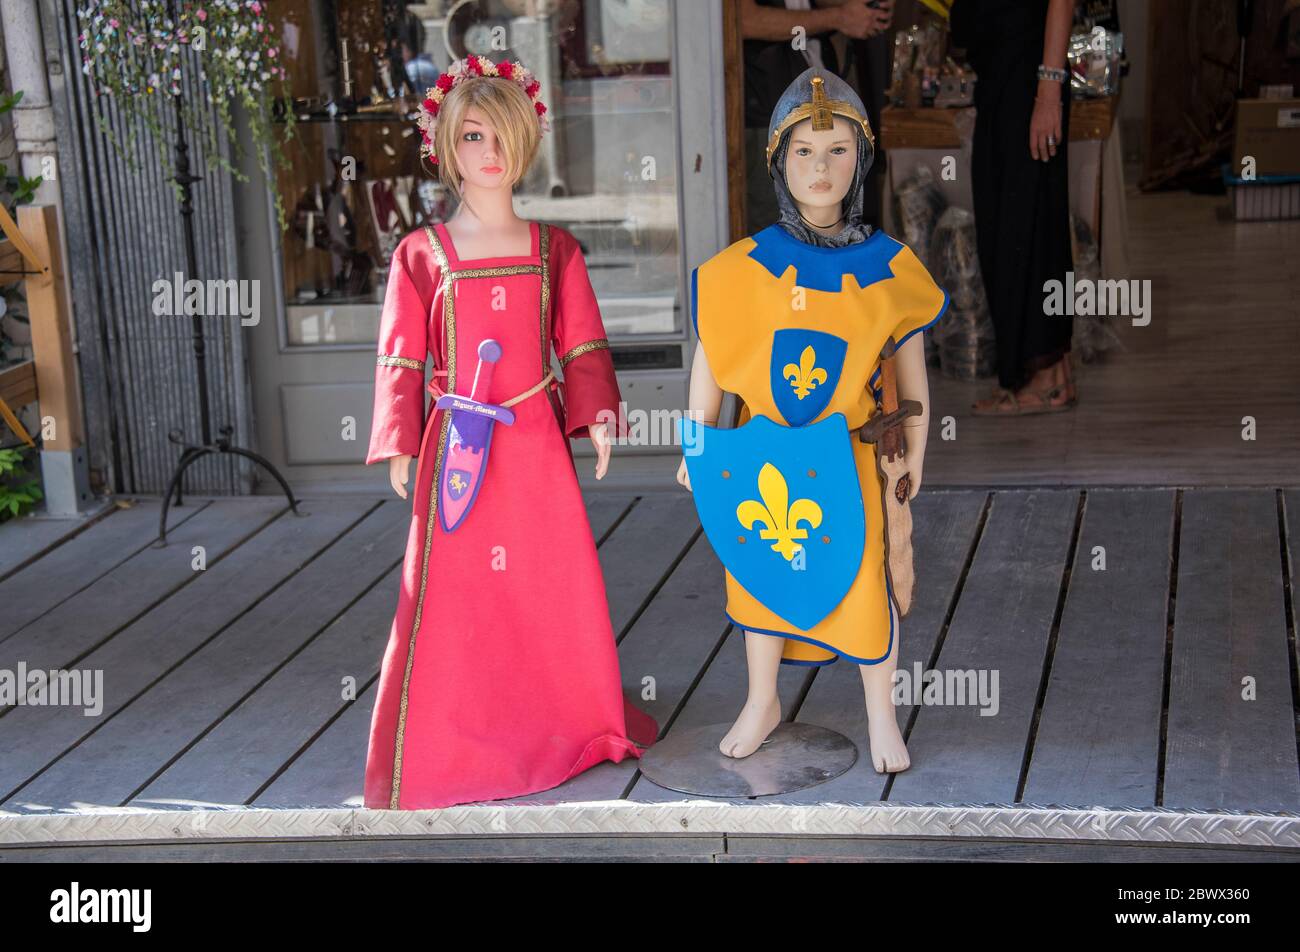 Afficher les mennequins médiévaux à l'extérieur du magasin d'Aigues-mortes. Banque D'Images